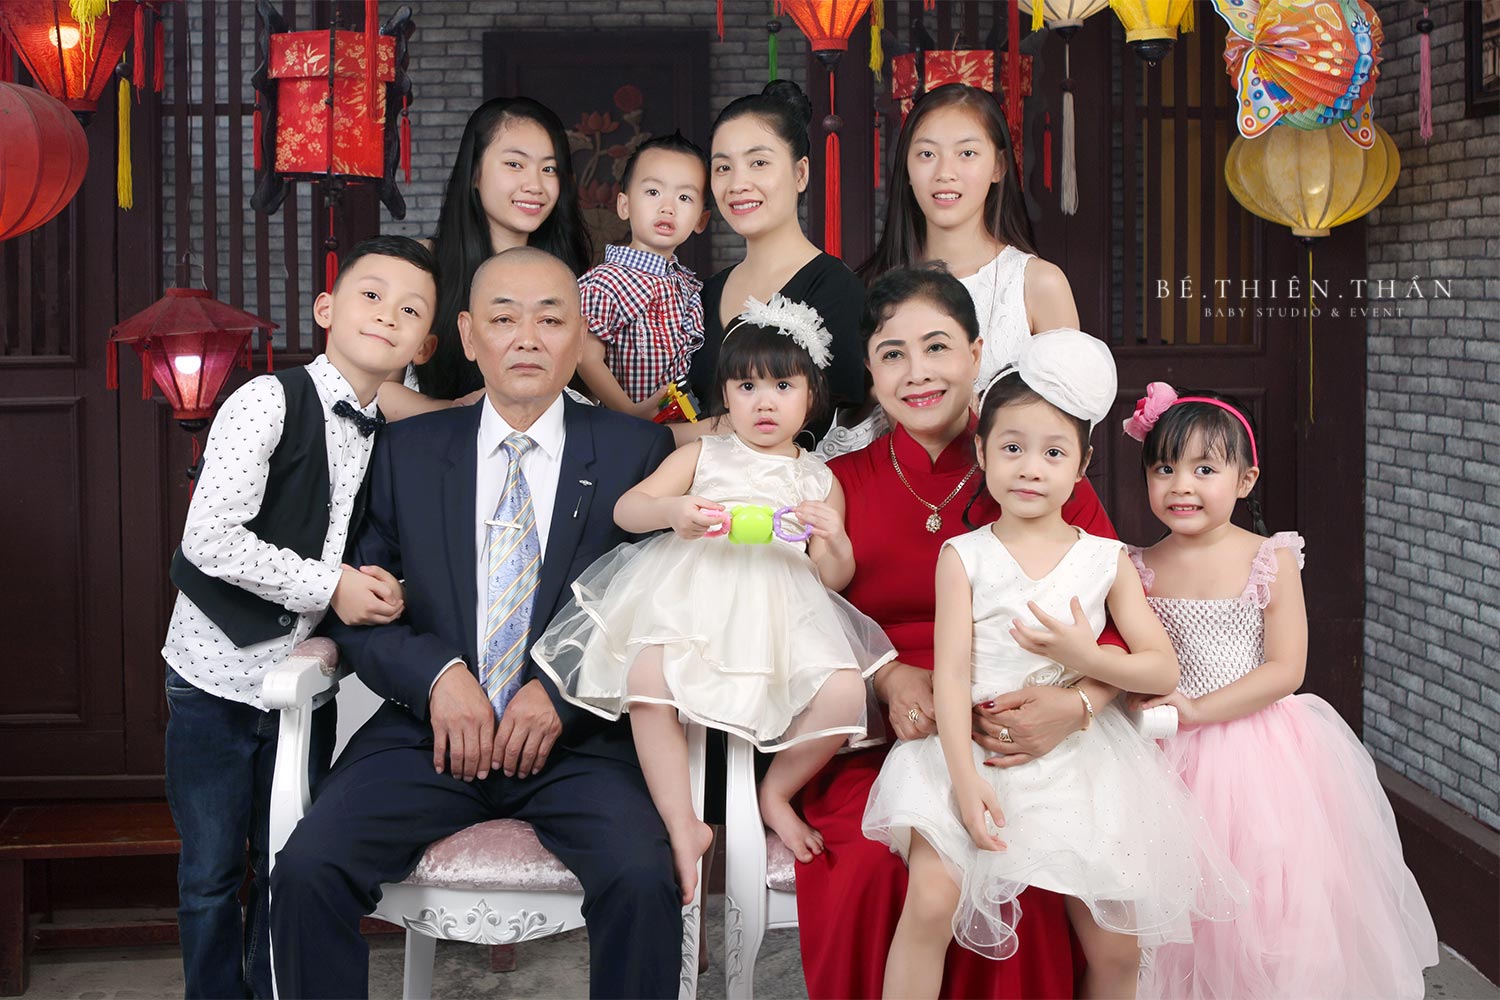 Chụp ảnh gia đình ngày Tết là một truyền thống văn hóa quan trọng của mỗi gia đình Việt Nam. Hãy để chúng tôi giúp bạn lưu giữ những kỷ niệm đáng nhớ của gia đình bạn trong bức ảnh đẹp nhất. Với kinh nghiệm và sự chuyên nghiệp, chúng tôi cam kết sẽ mang lại cho bạn những bức ảnh chất lượng và ý nghĩa nhất.